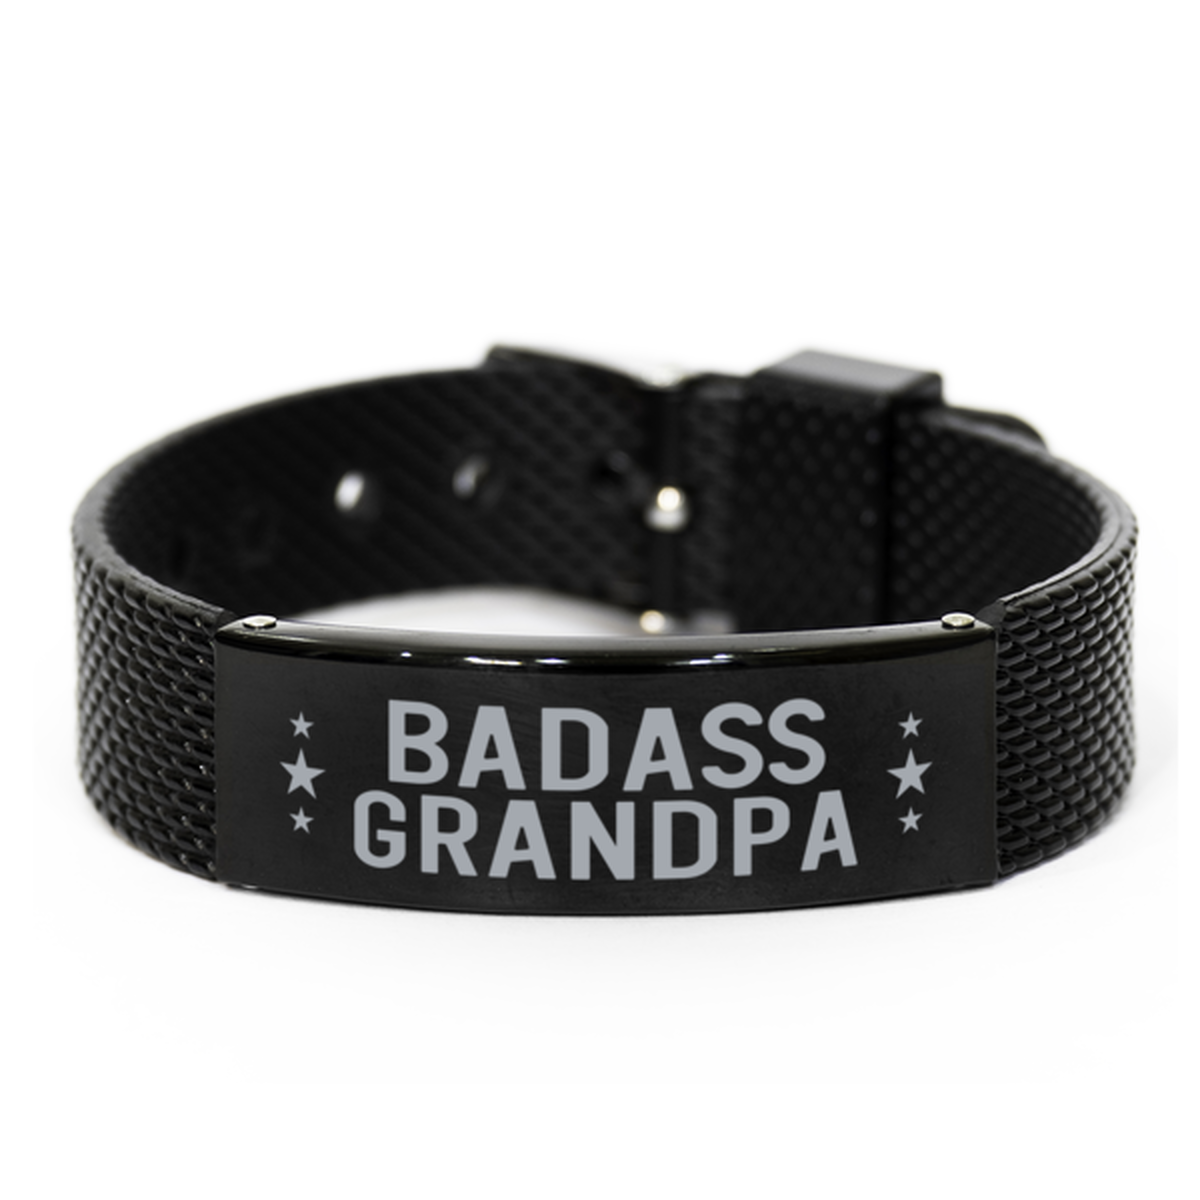 Grandpa Black Shark Mesh Bracelet, Badass Grandpa, Funny Family Gifts For Grandpa From Granddaughter Grandson